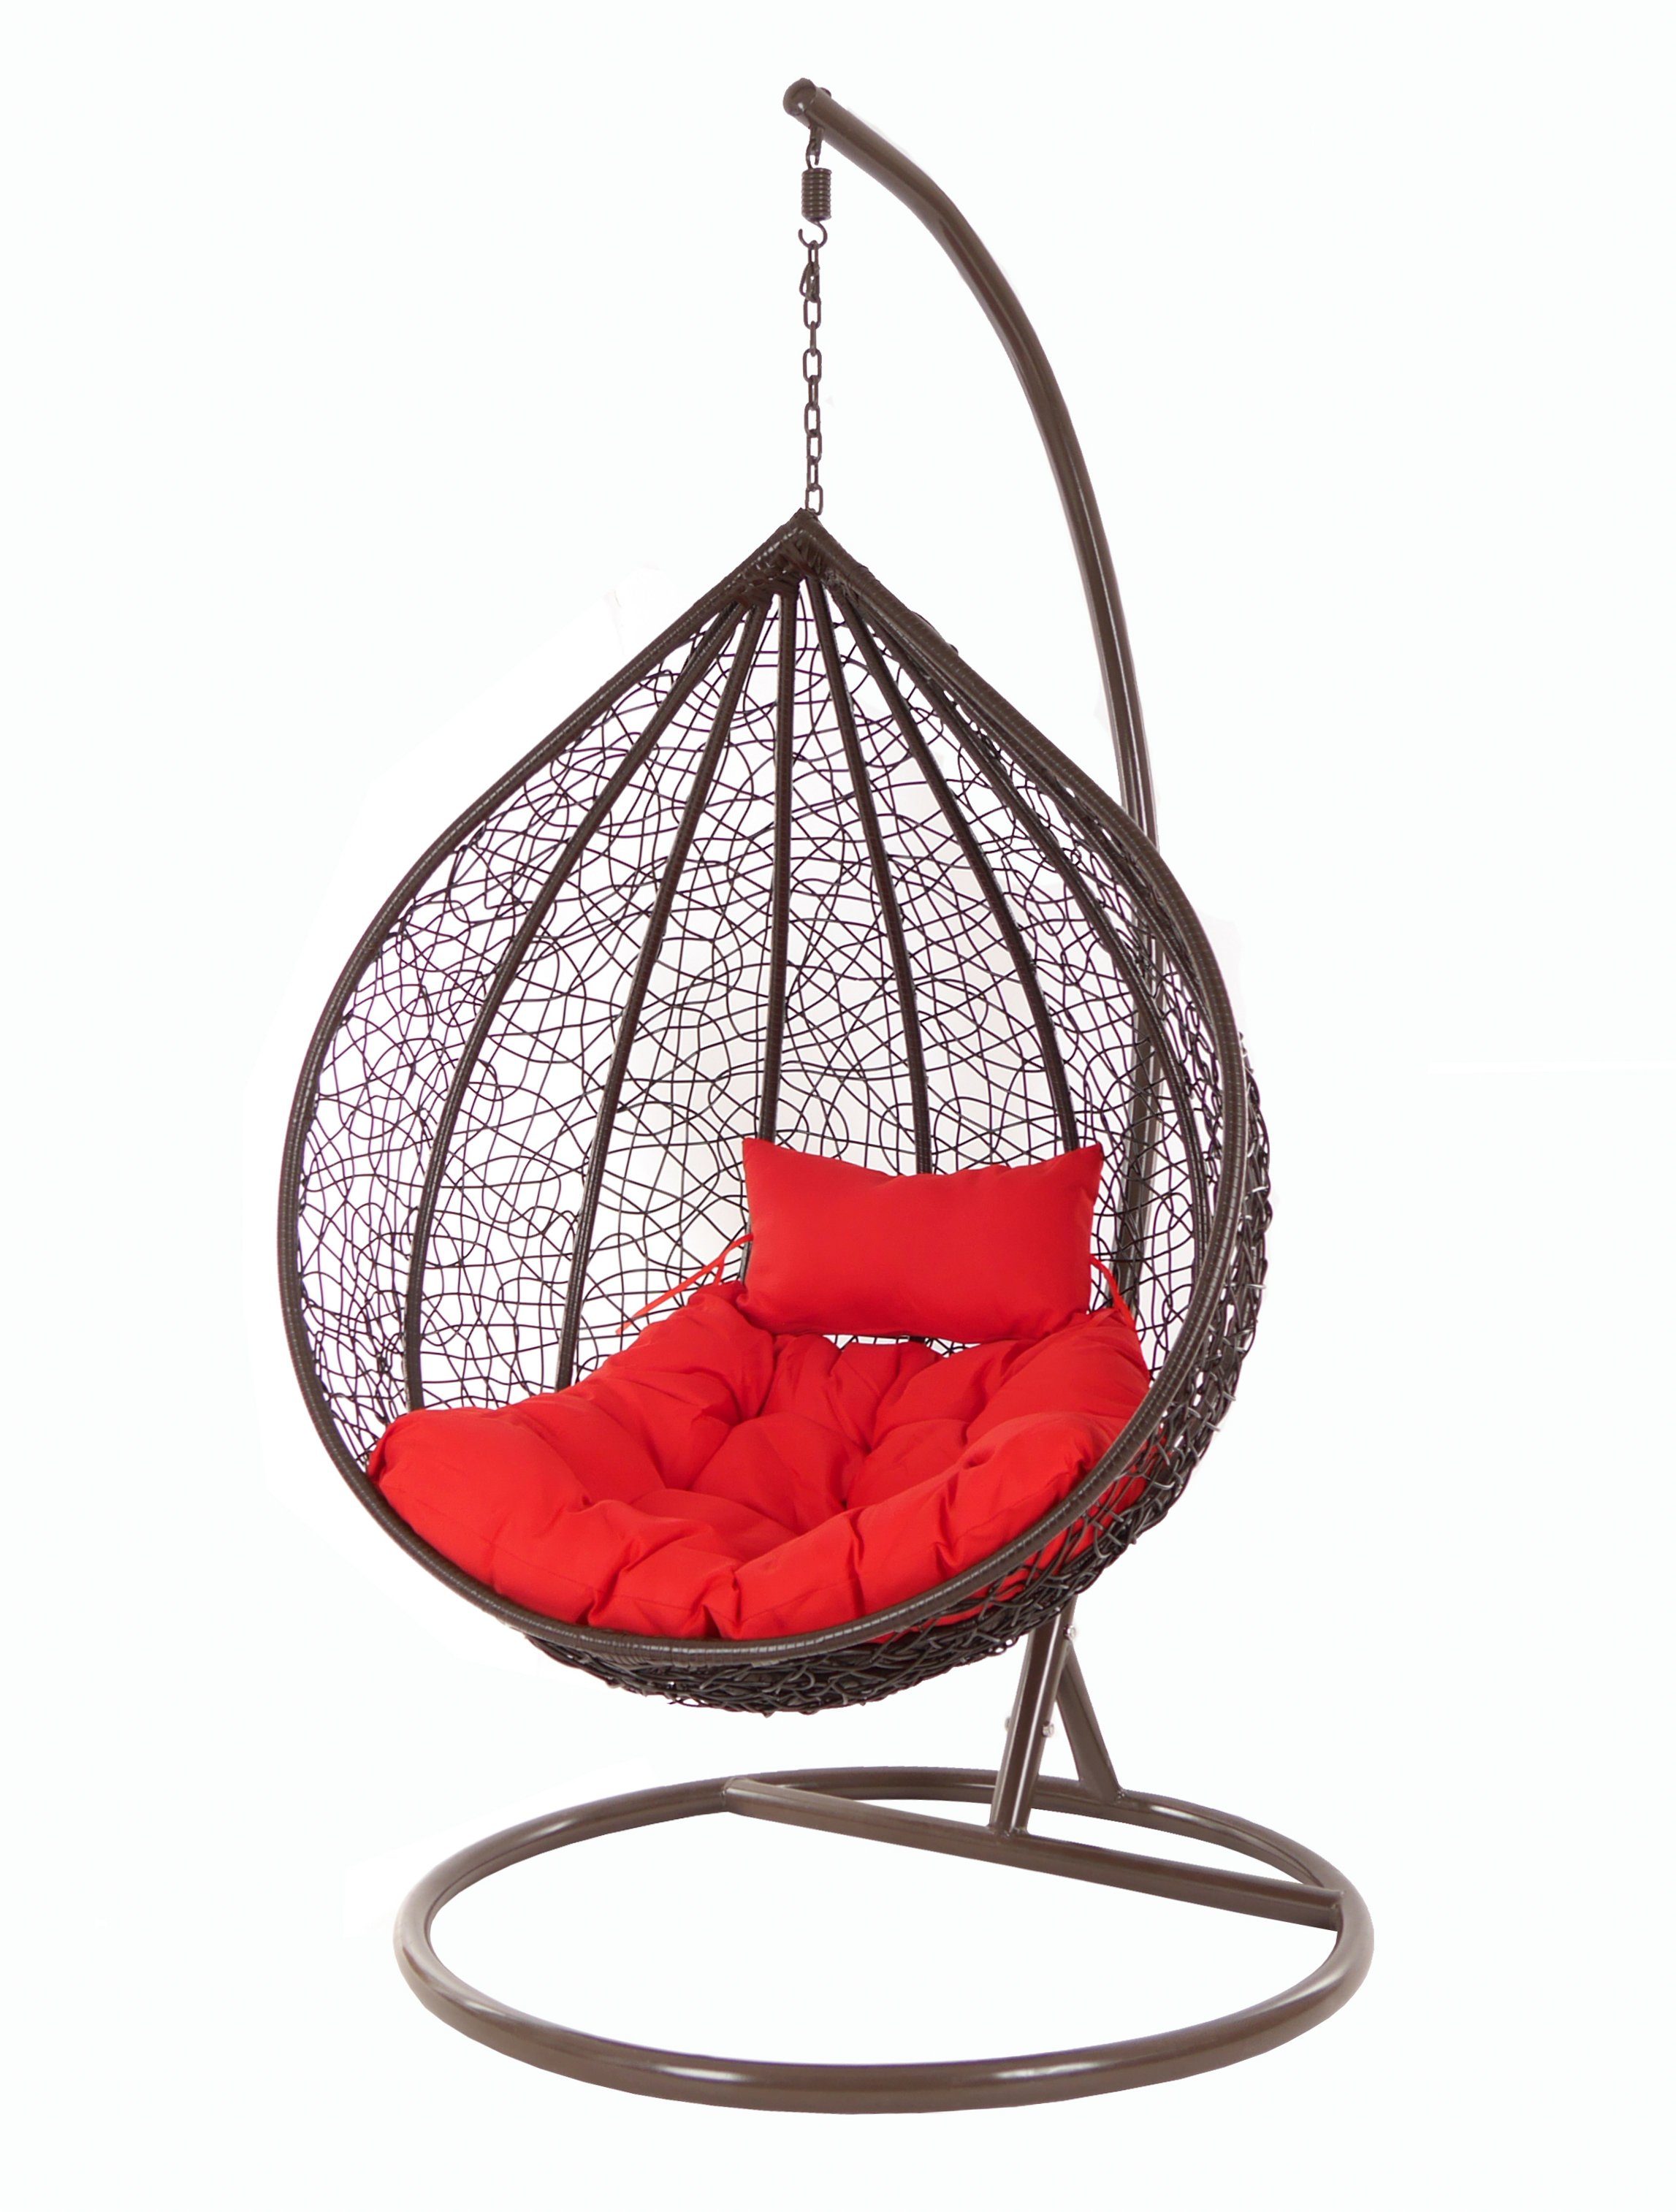 Chair, Kissen, Hängesessel MANACOR und (3050 Swing scarlet) mit darkbrown, dunkelbraun, KIDEO Loungemöbel Hängesessel rot Gestell Hängesessel